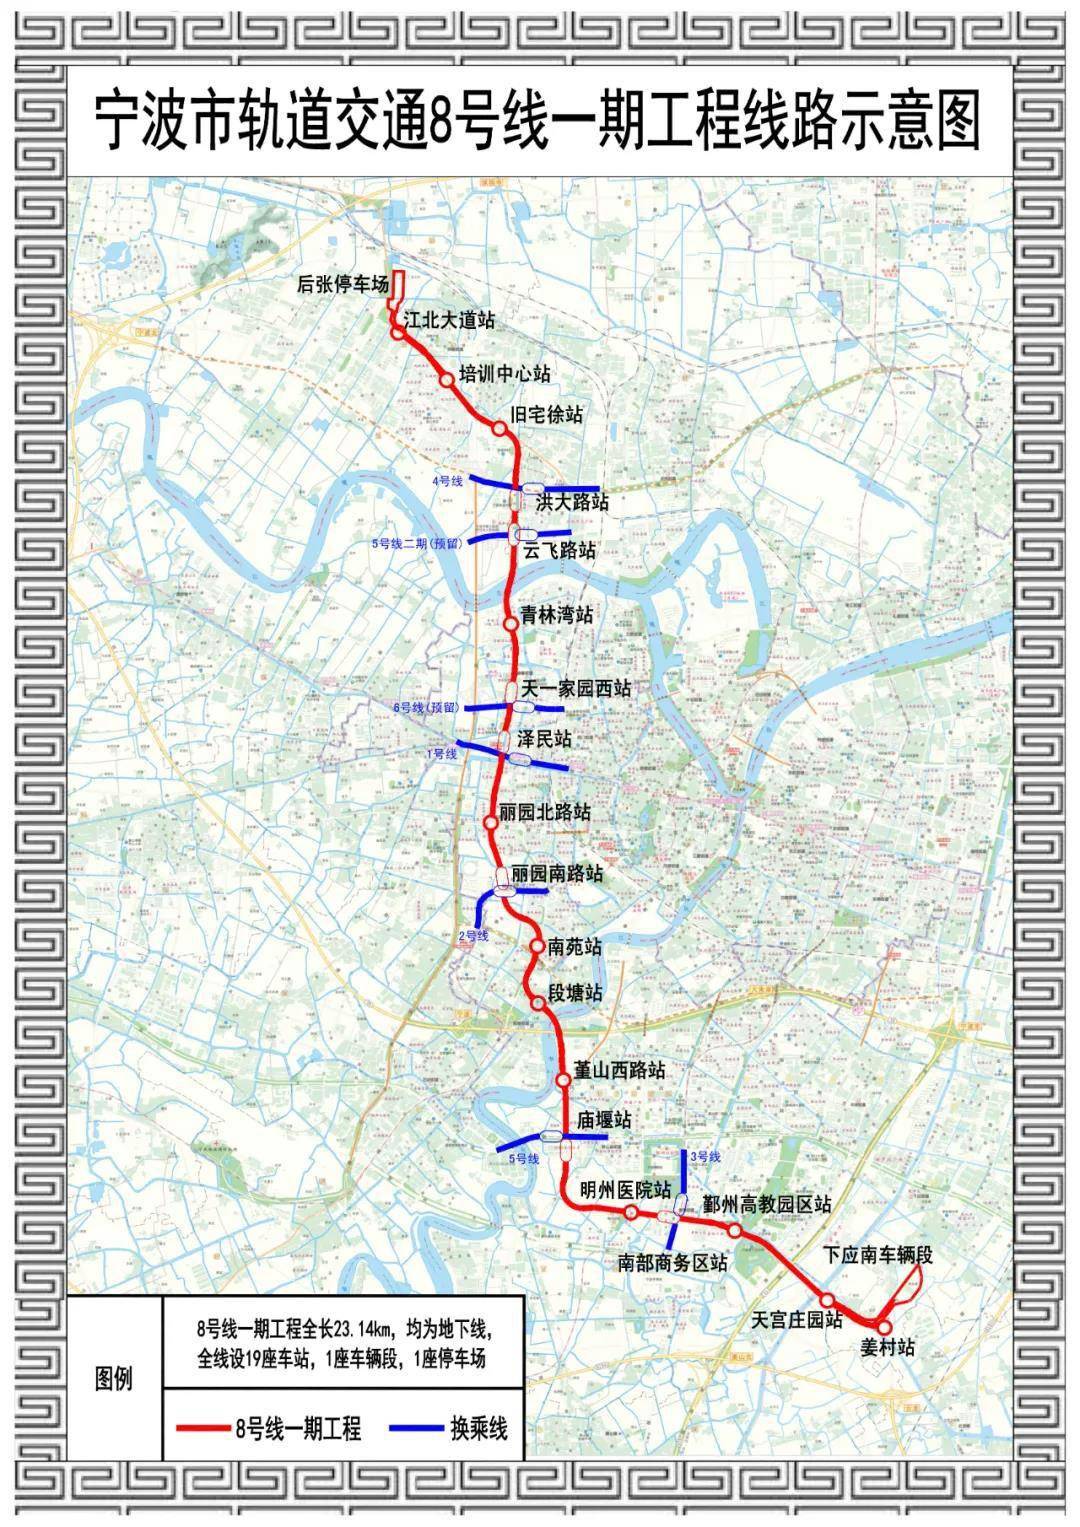 宁波市轨道交通8号线一期工程为西北-东南向的市区线,西北起于江北区